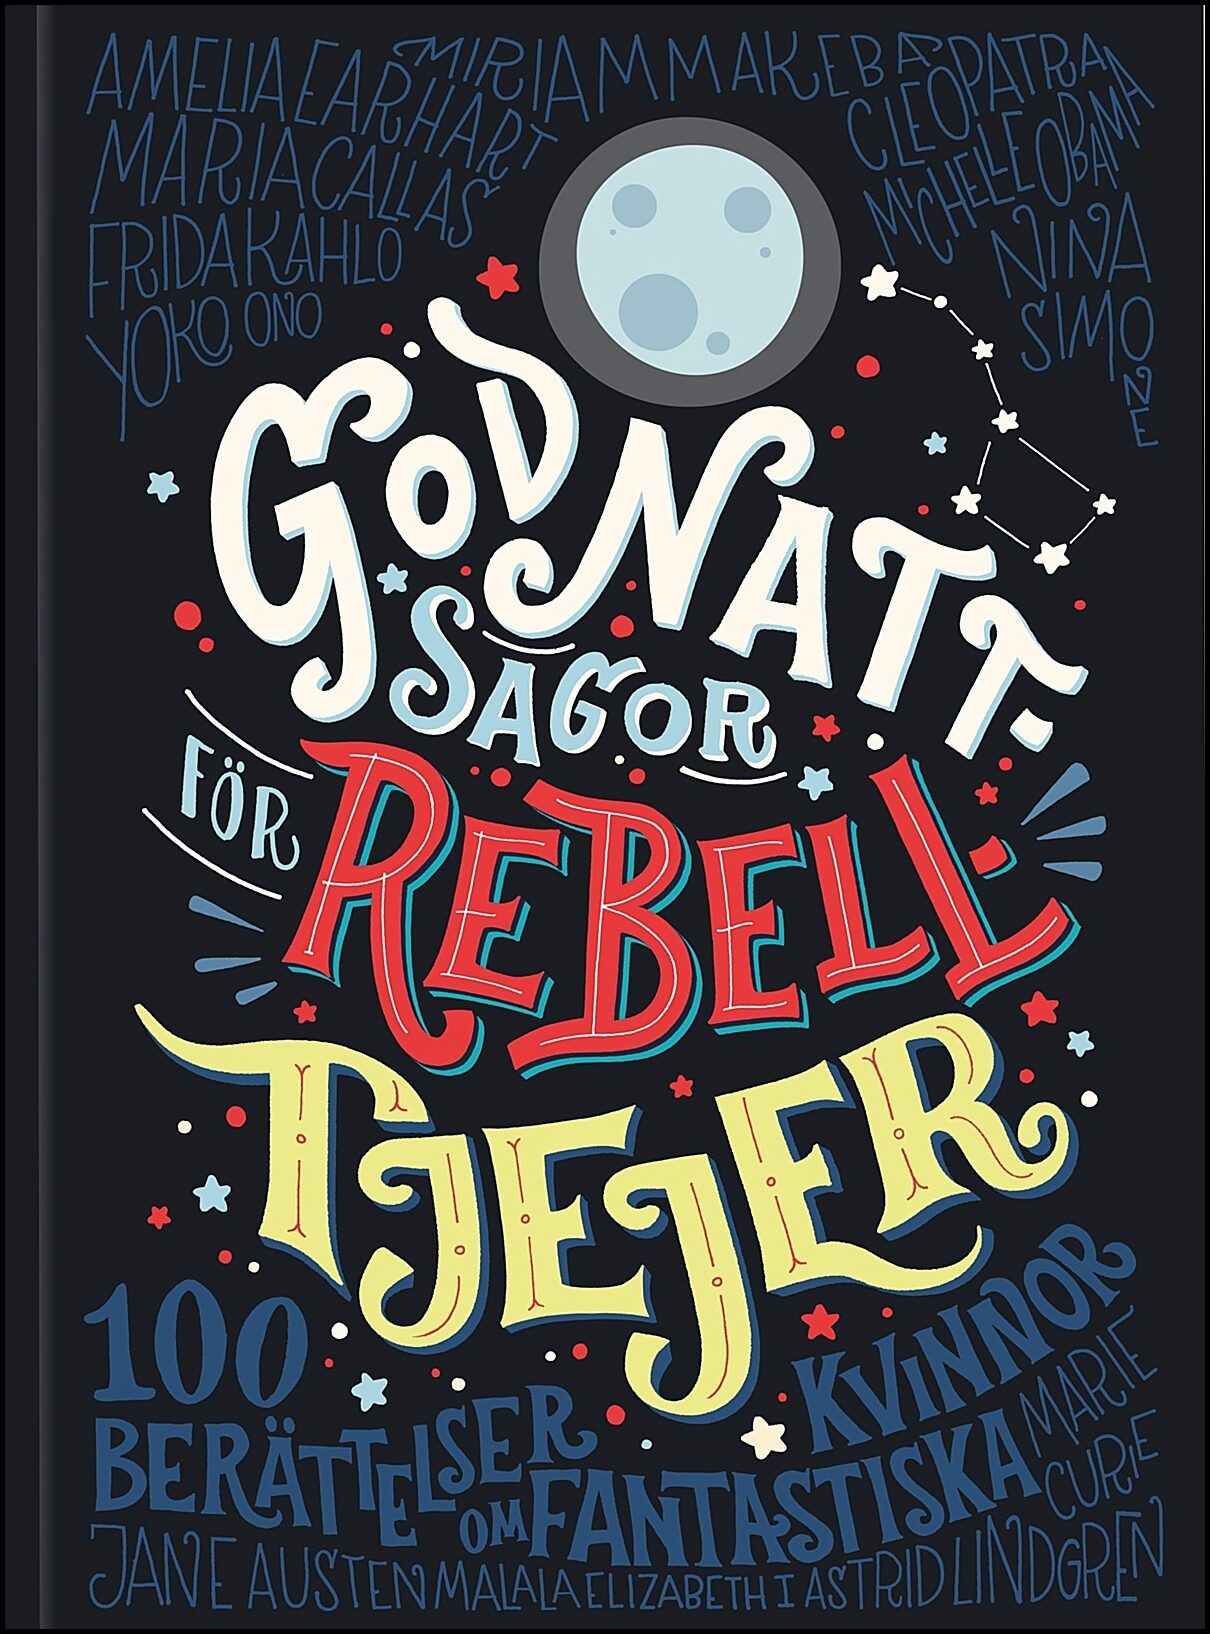 Favilli, Elena| Cavallo, Francesca | Godnattsagor för rebelltjejer : 100 berättelser om fantastiska kvinnor